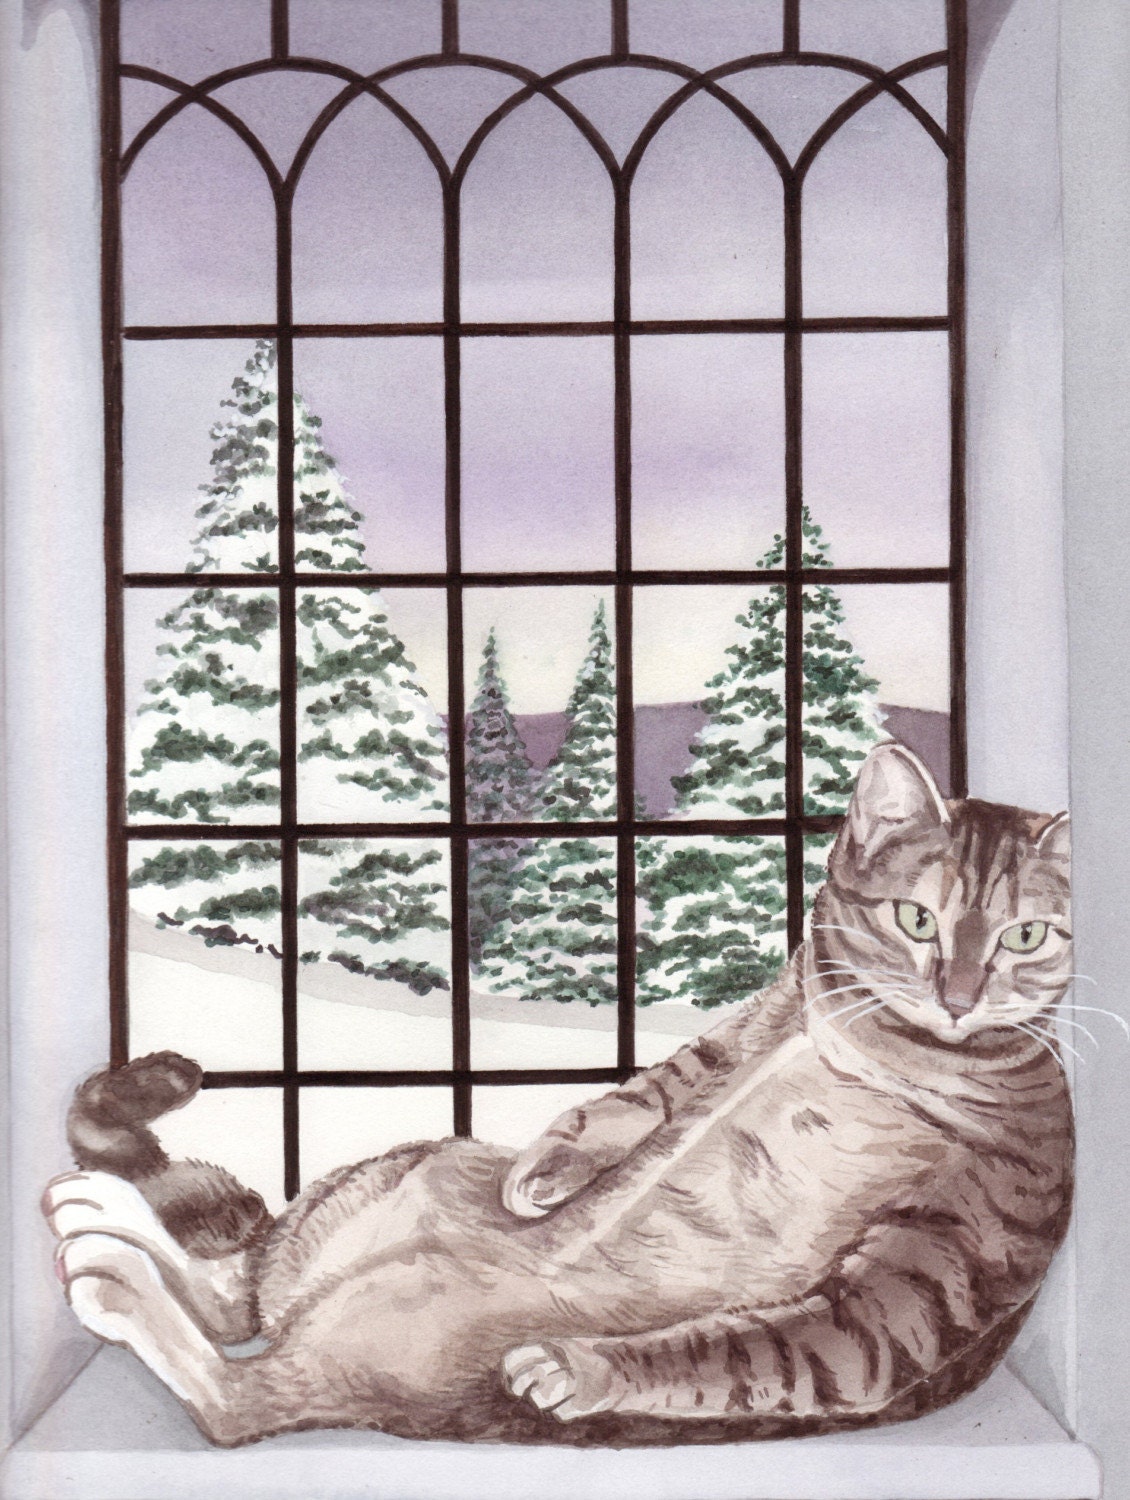 Baby, it's cold outside, but fat cat has warm window seat / Lynch folk art print